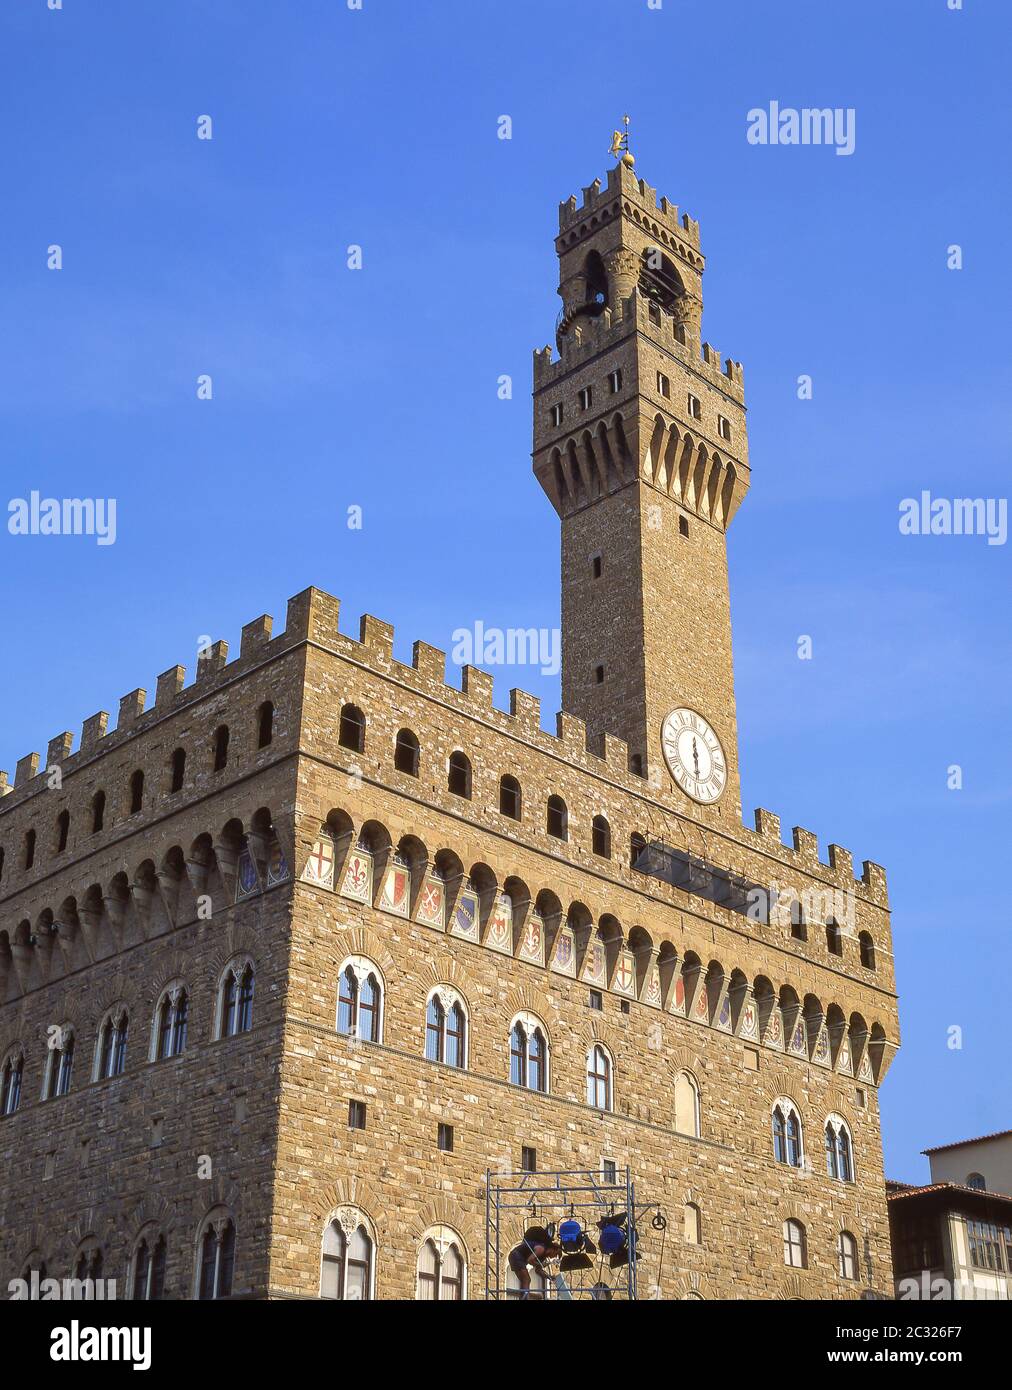 Palazzo Vecchio, Piazza della Signoria, Firenze (Firenze), Regione Toscana, Italia Foto Stock